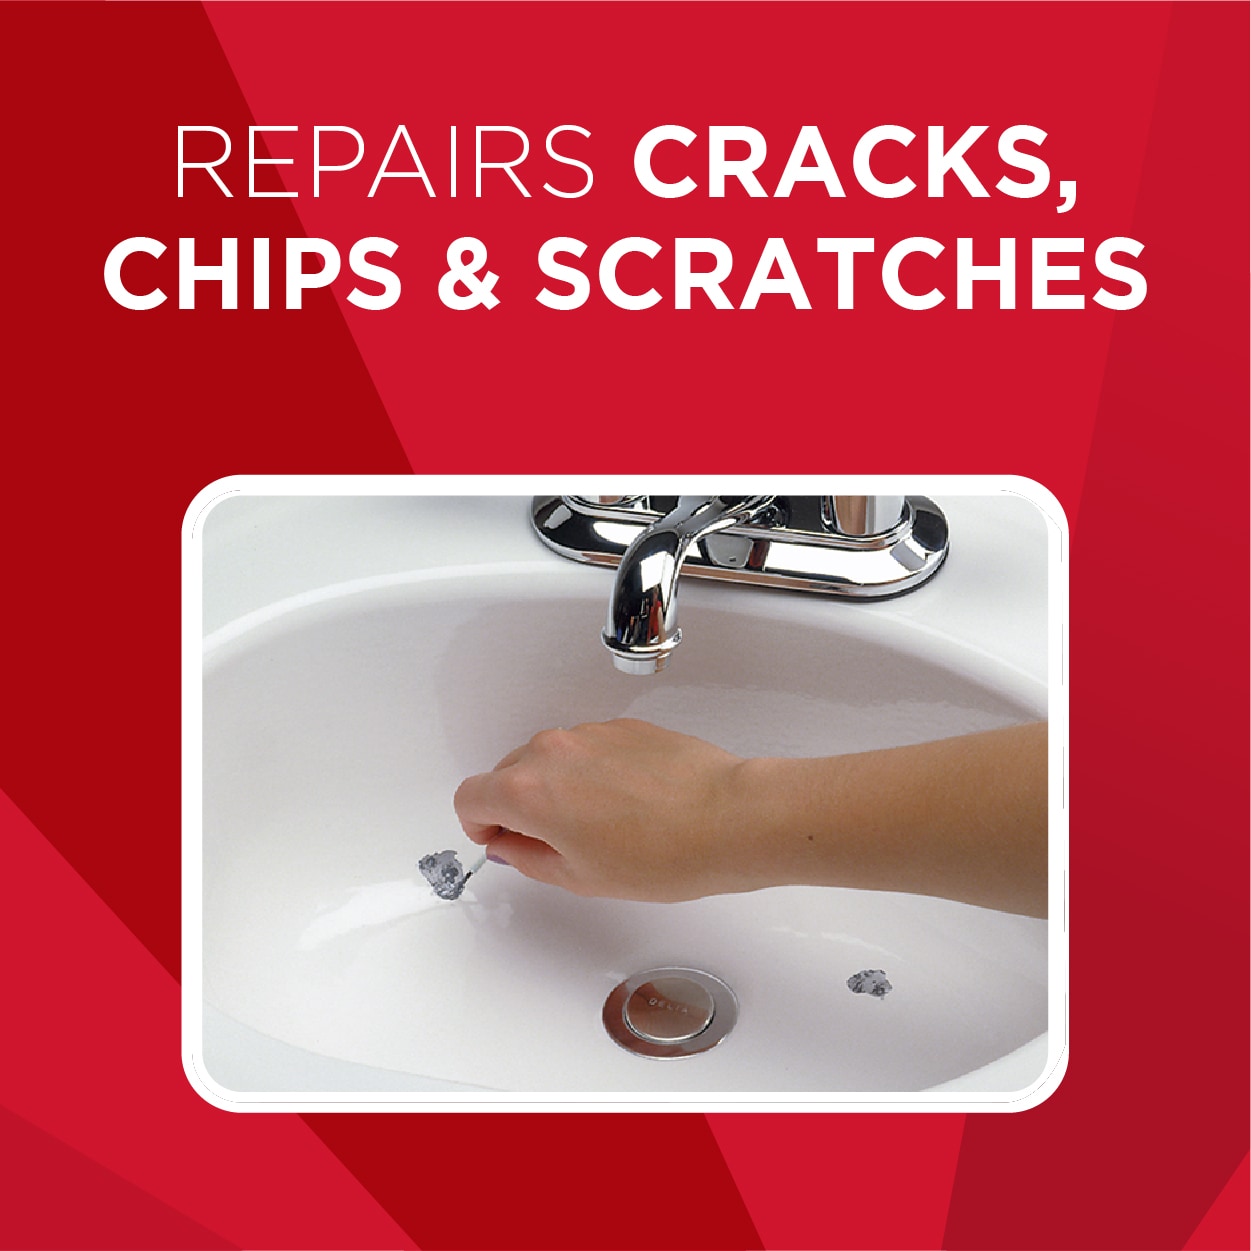 Ceramic Repair Paste Tub Tile and Shower Porcelain Repair Kit for Crack  Chip Ceramic Bathroom Tub Floor Ceramic Repair Paste White Grout Tiling Tile  Repair 30/50/100g 